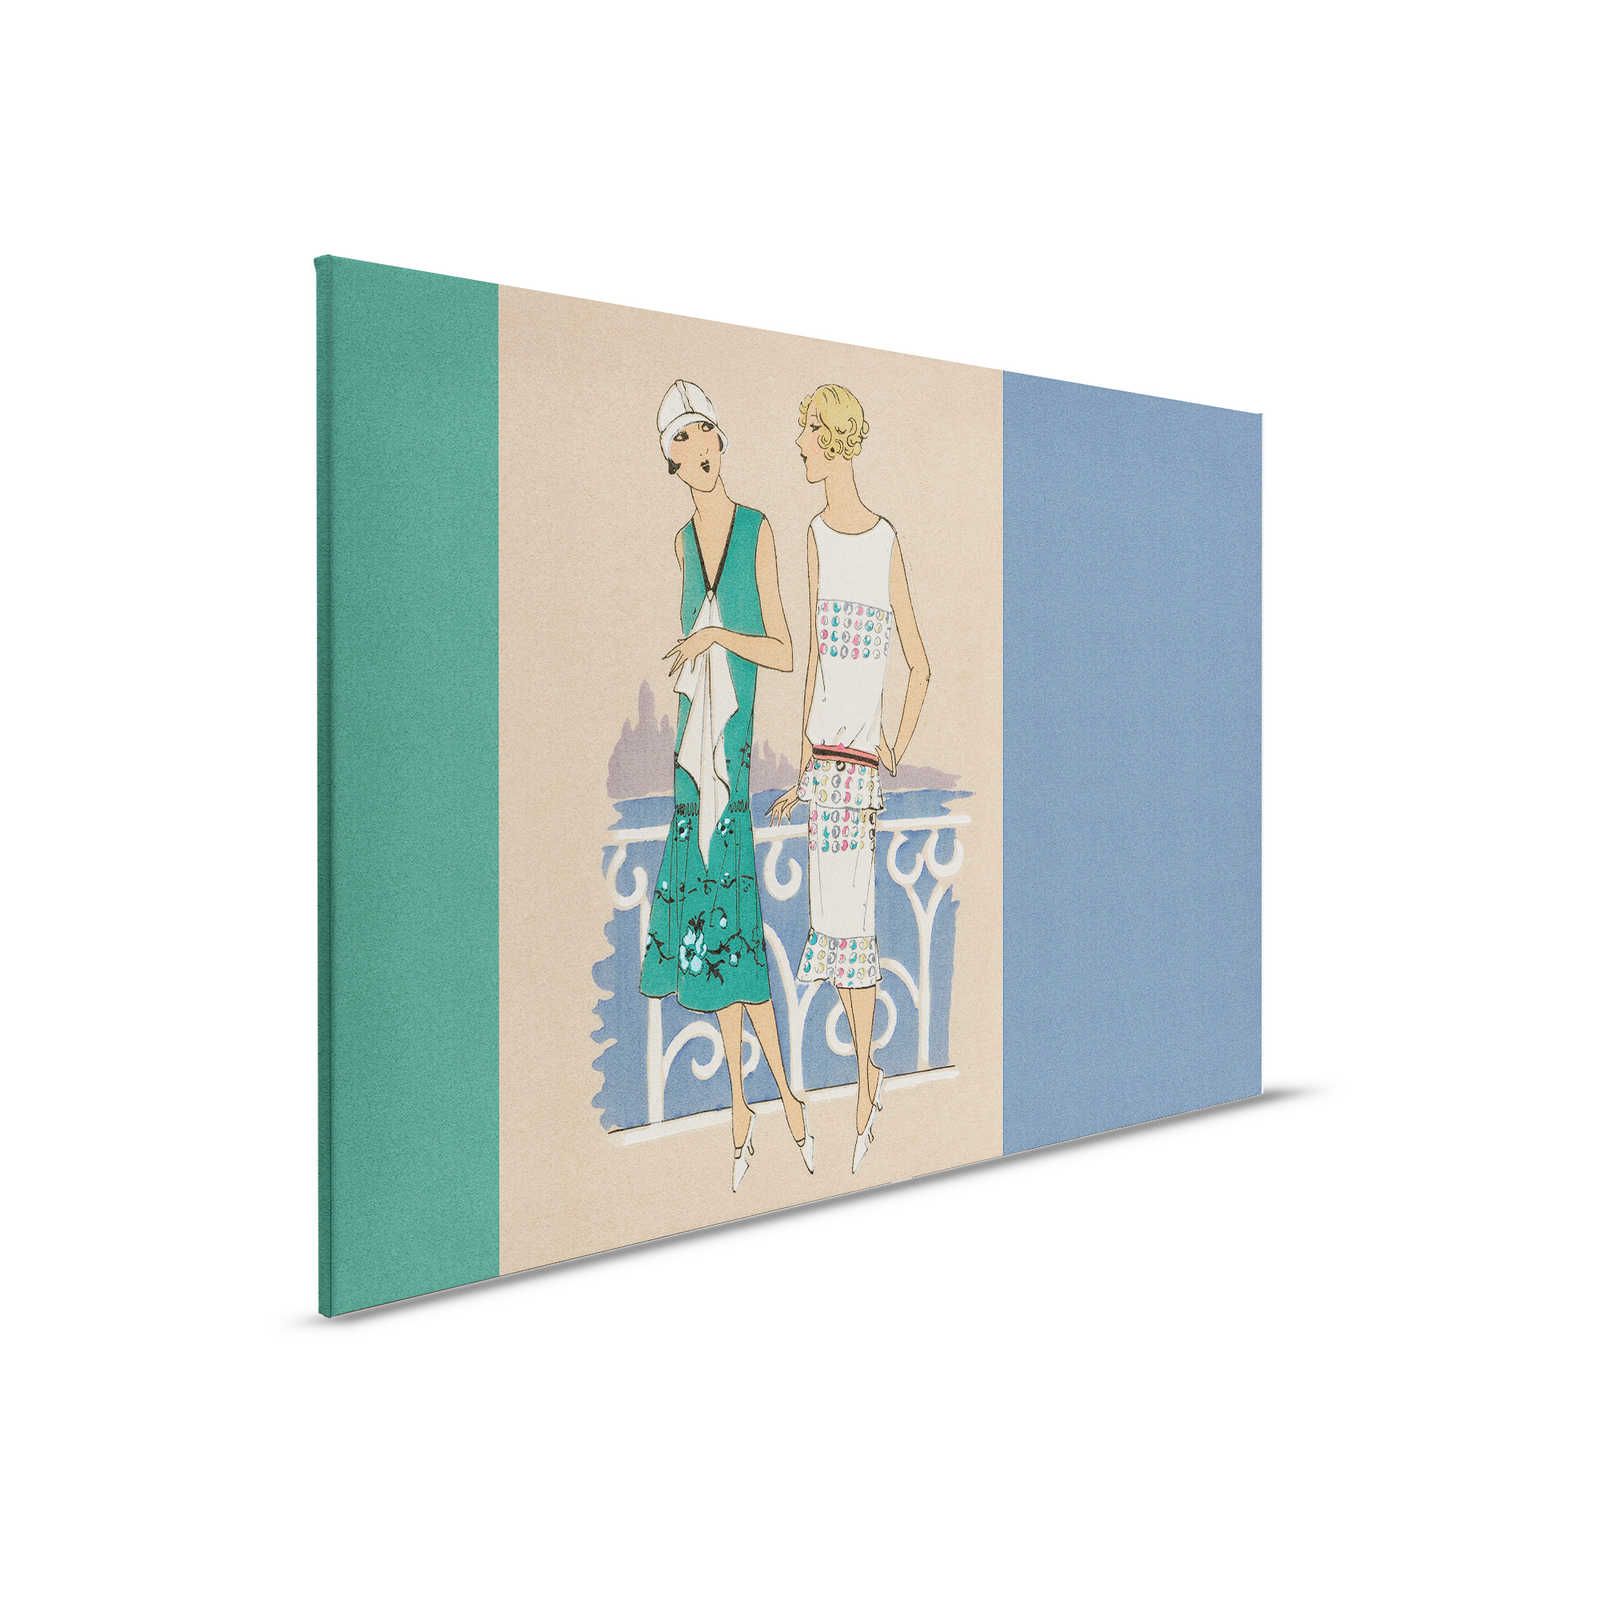 Parisienne 3 - Retro Canvas Schilderij Fashion Print jaren 20 in Blauw & Groen - 0.90 m x 0.60 m
